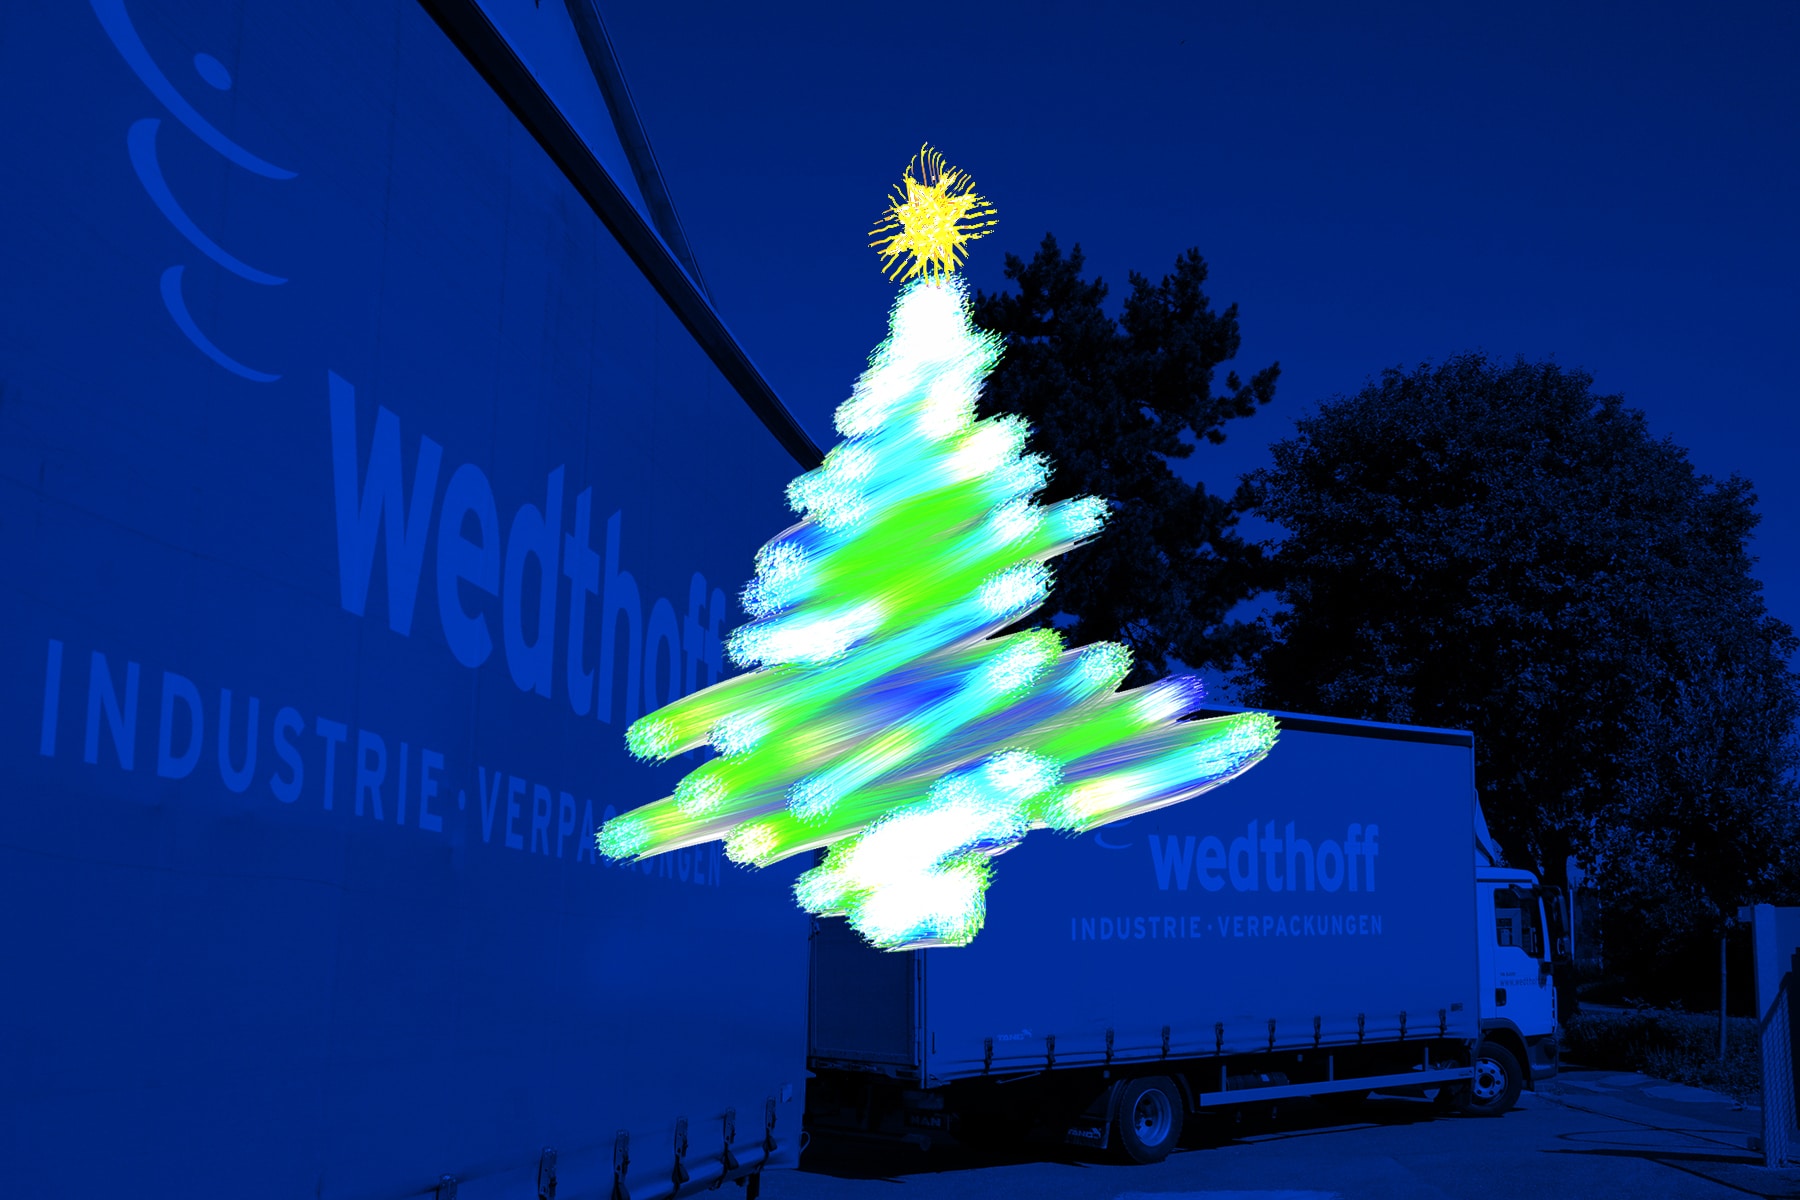 Frohe Wihnachten by WEDTHOFF Industrieverpackungen